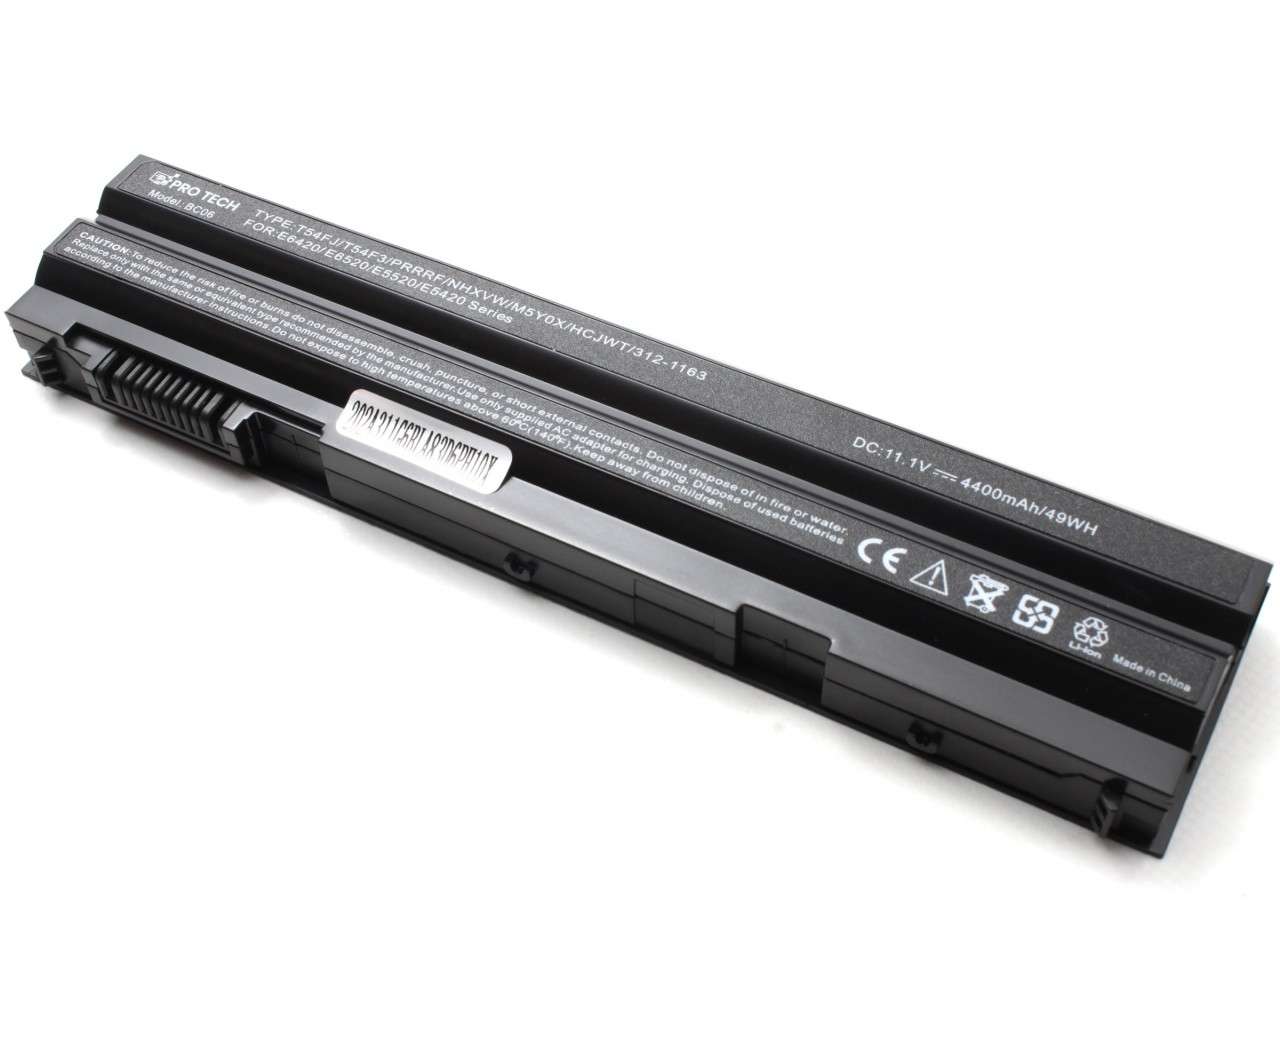 Baterie Dell Latitude E6430 XFR imagine powerlaptop.ro 2021